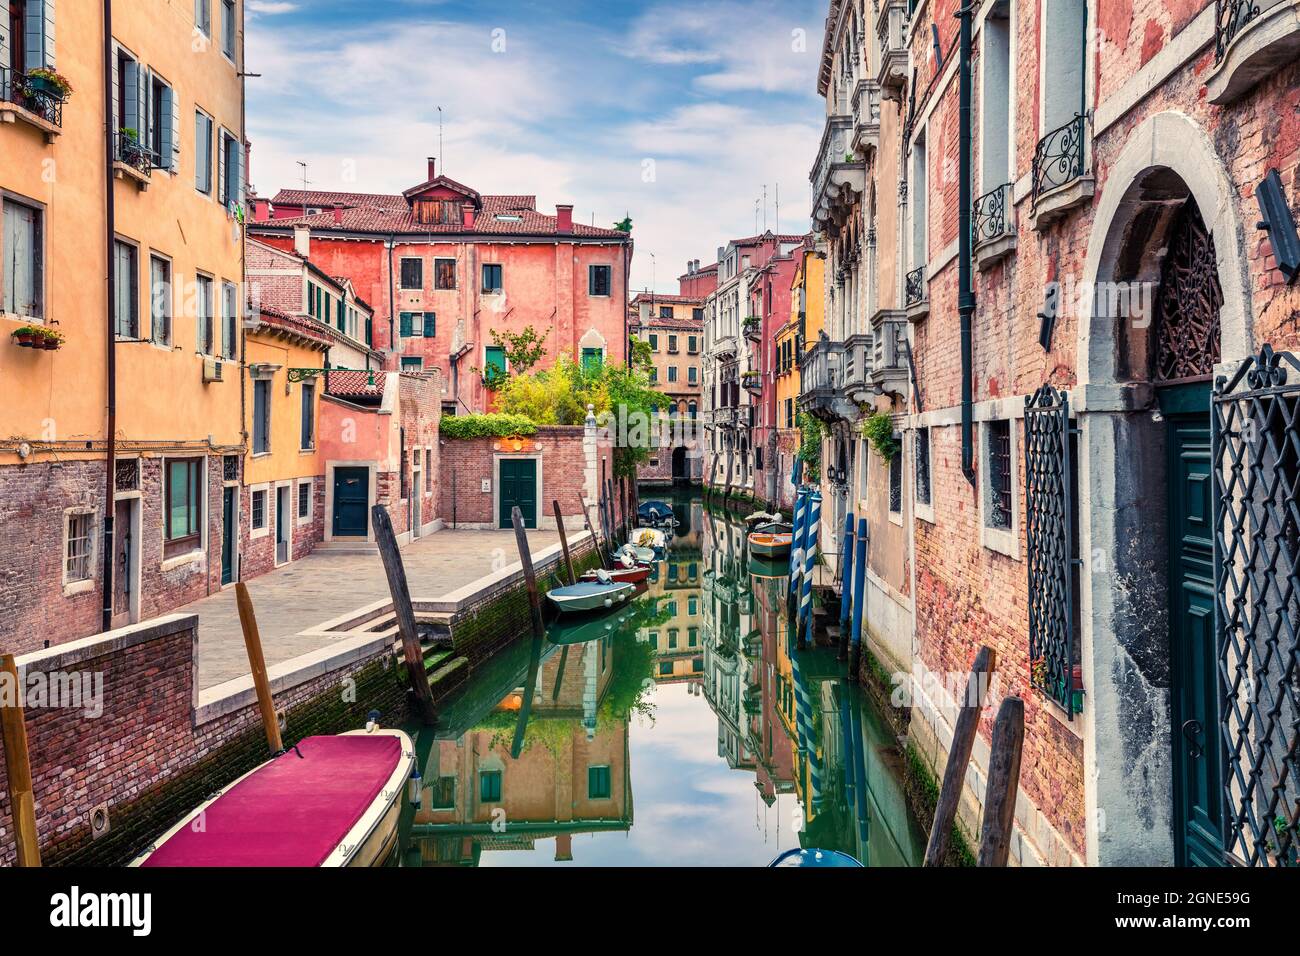 Blick auf den Frühling von Vennice mit dem berühmten Wasserkanal und bunten Häusern. Herrliche Morgenszene in Italien, Europa. Zauberhafter mediterraner Stadscap Stockfoto